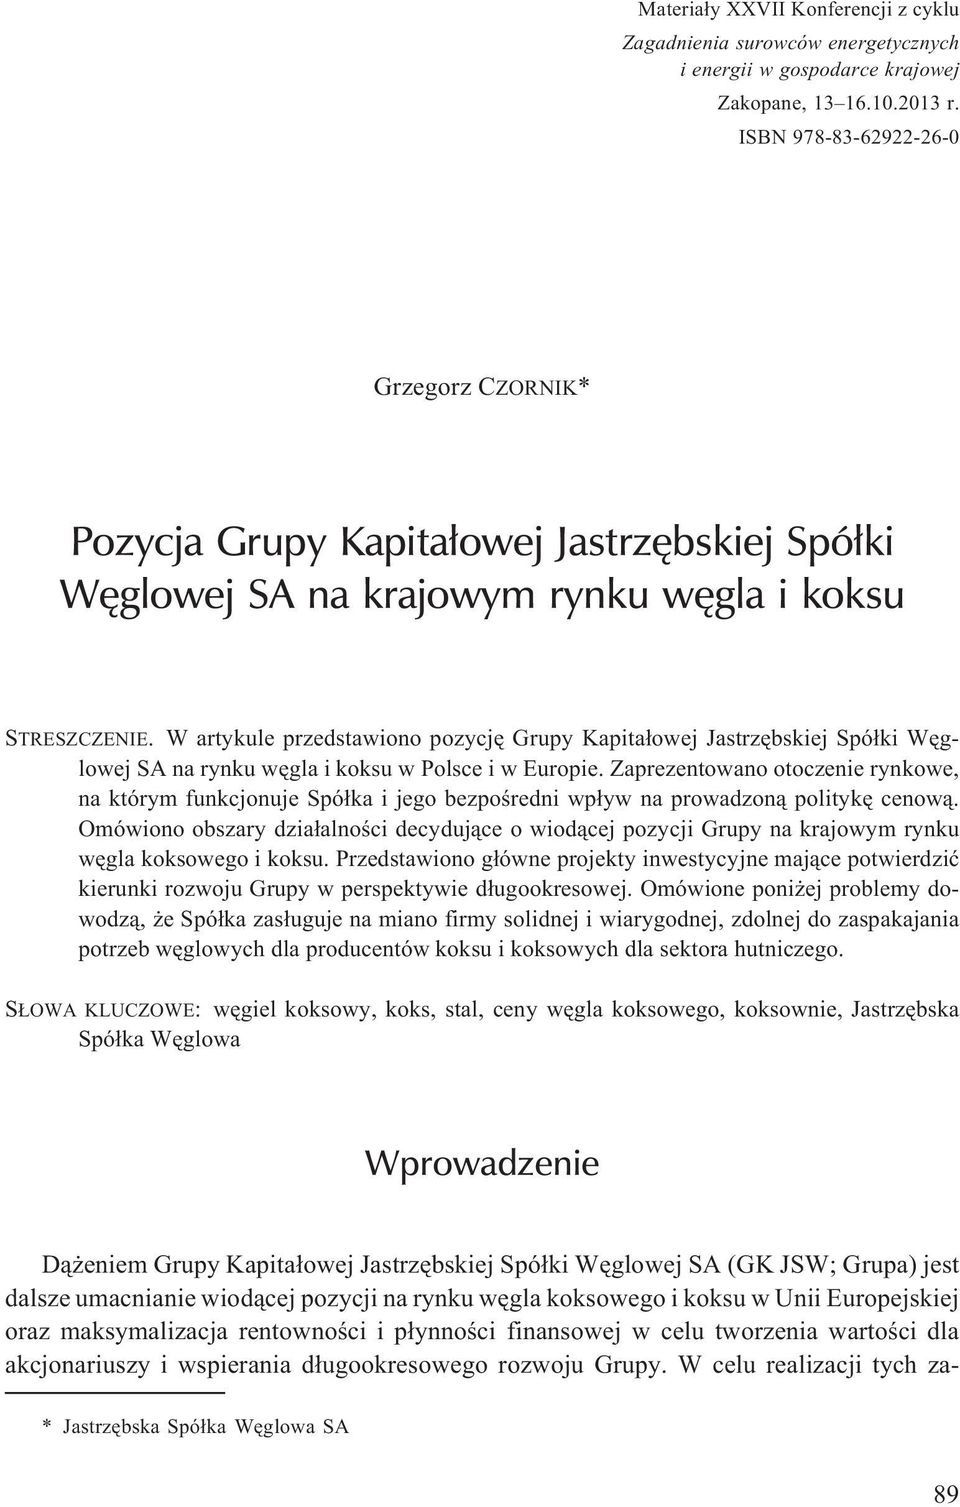 W artykule przedstawiono pozycjê Grupy Kapita³owej Jastrzêbskiej Spó³ki Wêglowej SA na rynku wêgla i koksu w Polsce i w Europie.